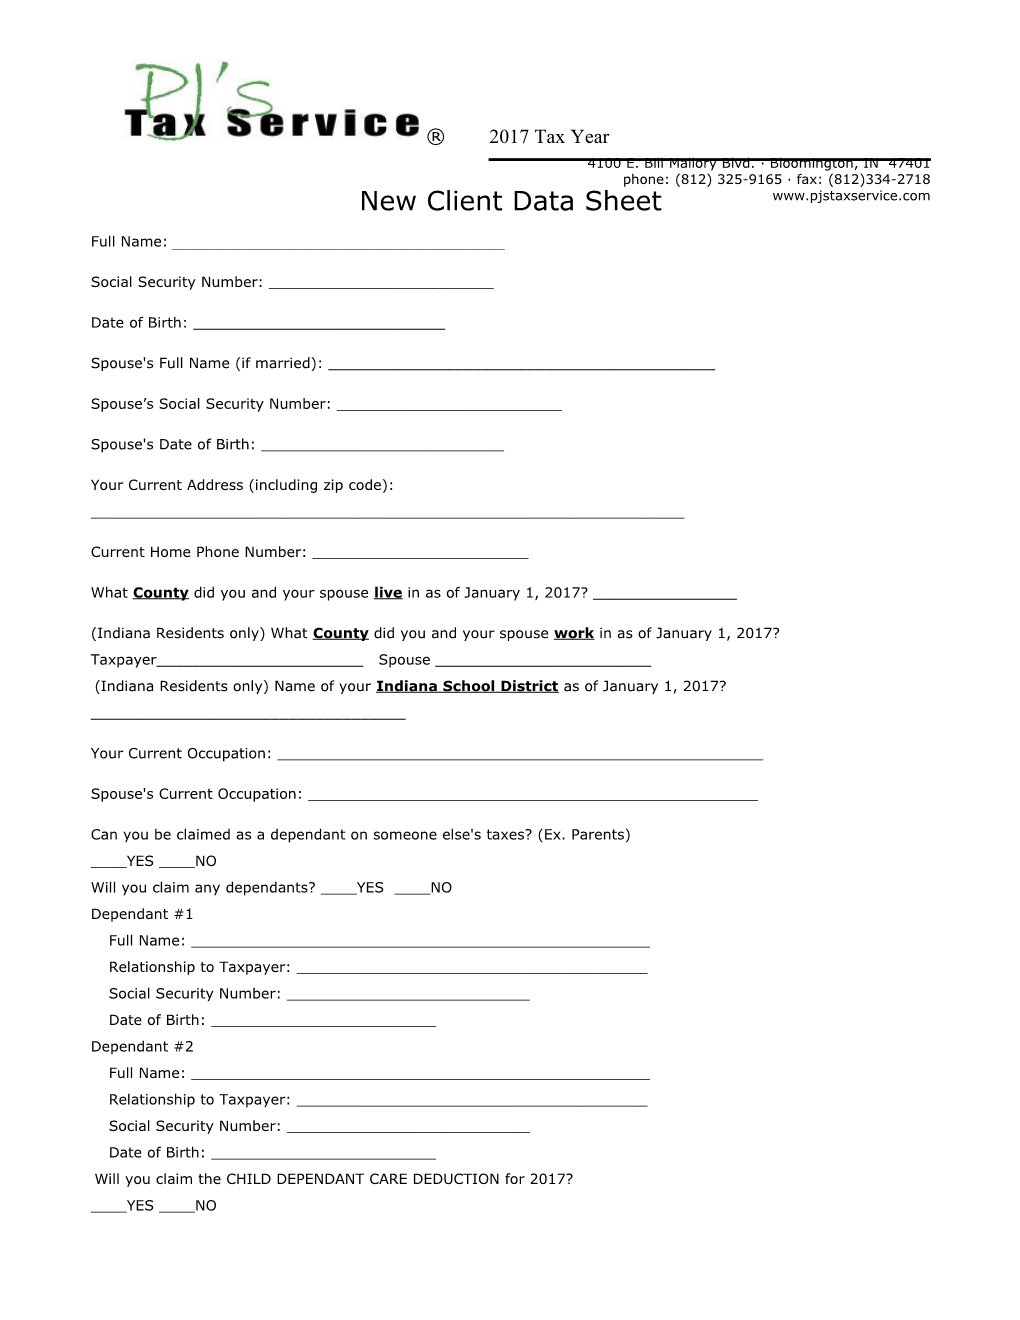 New Client Data Sheet